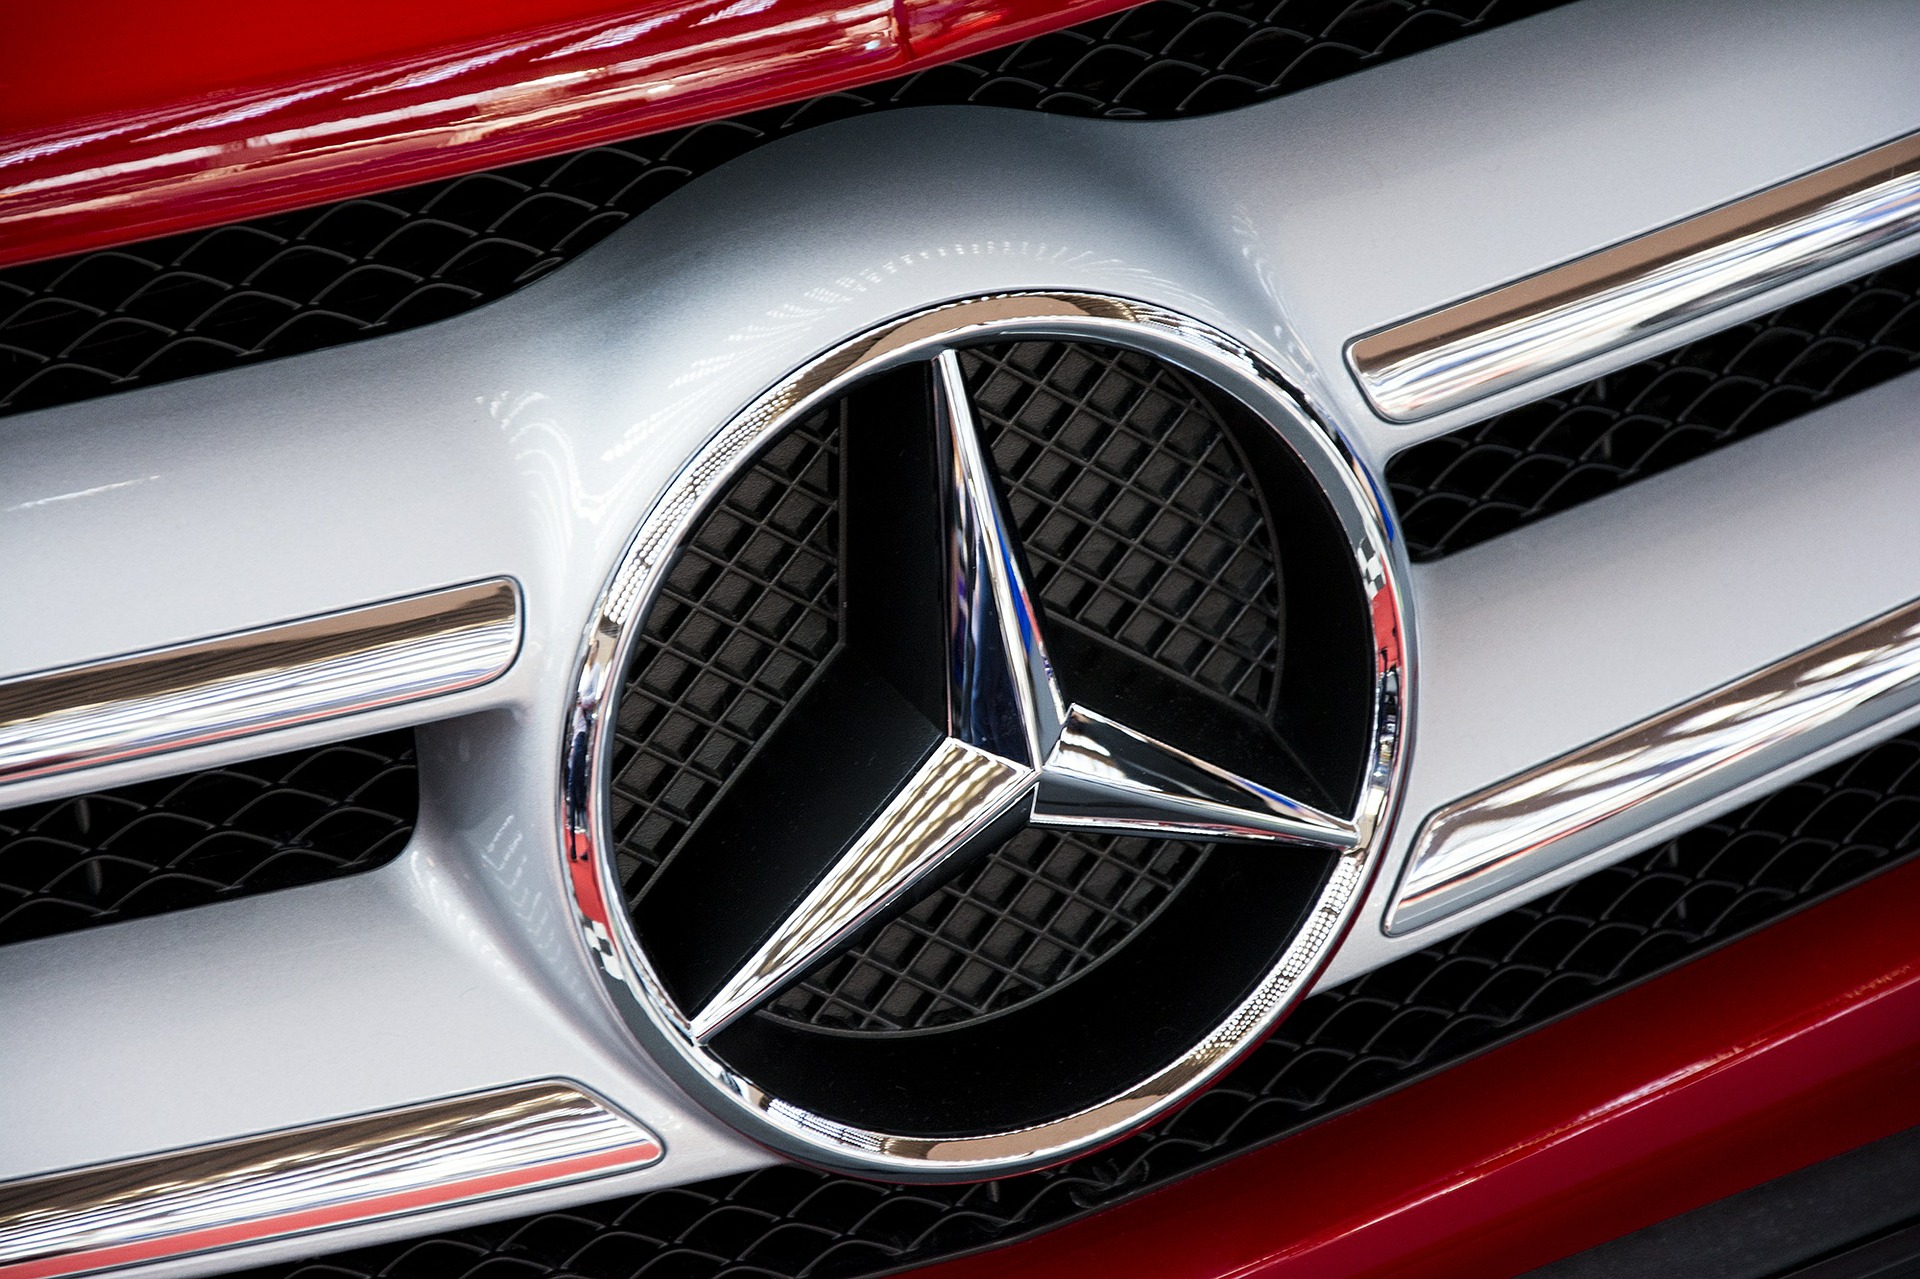 Mercedes muss für illegale Abschalteinrichtungen zahlen